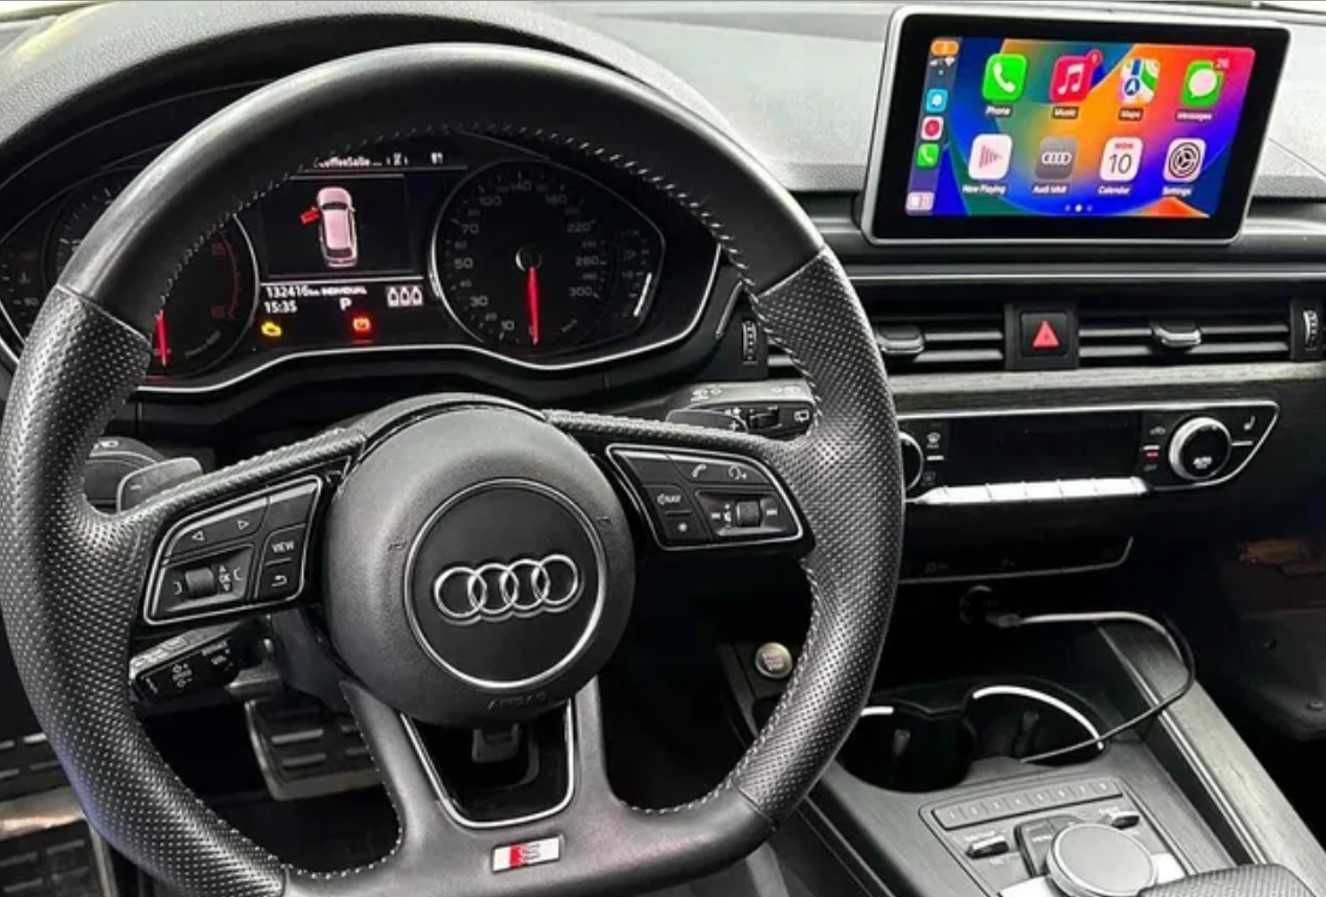 Ауди Активация/отключване Apple CarPlay Android Auto Audi A4 B9 A5 Q5